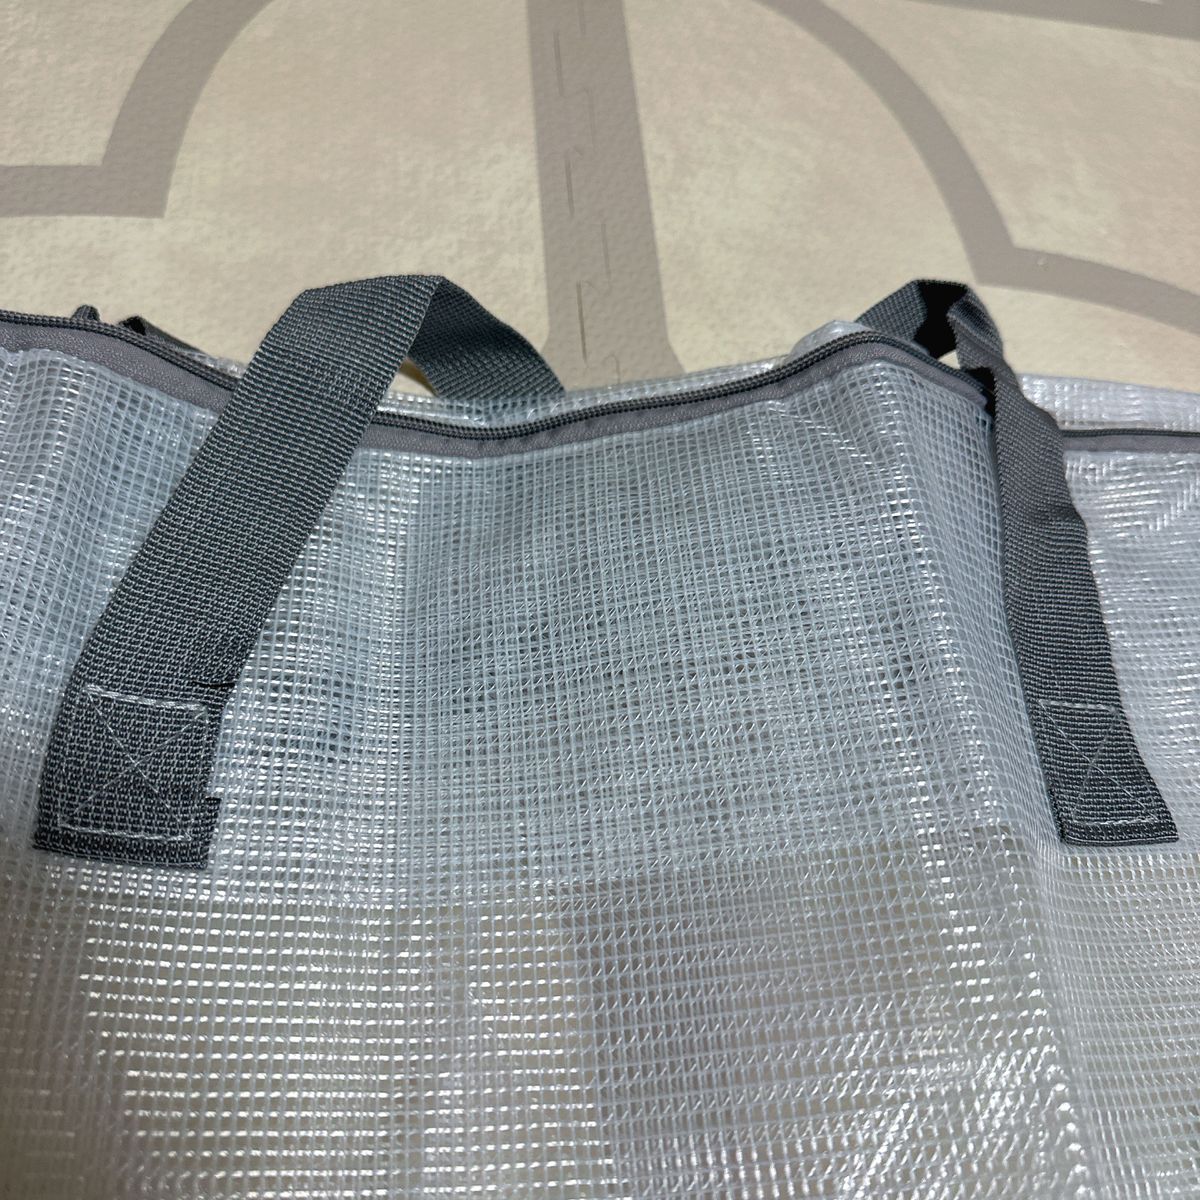 布団 衣類 収納袋 移動しやすい 持ち手付き 半透明仕様 PVC素材 ダブルファスナー 防水 ランドリーバッグ